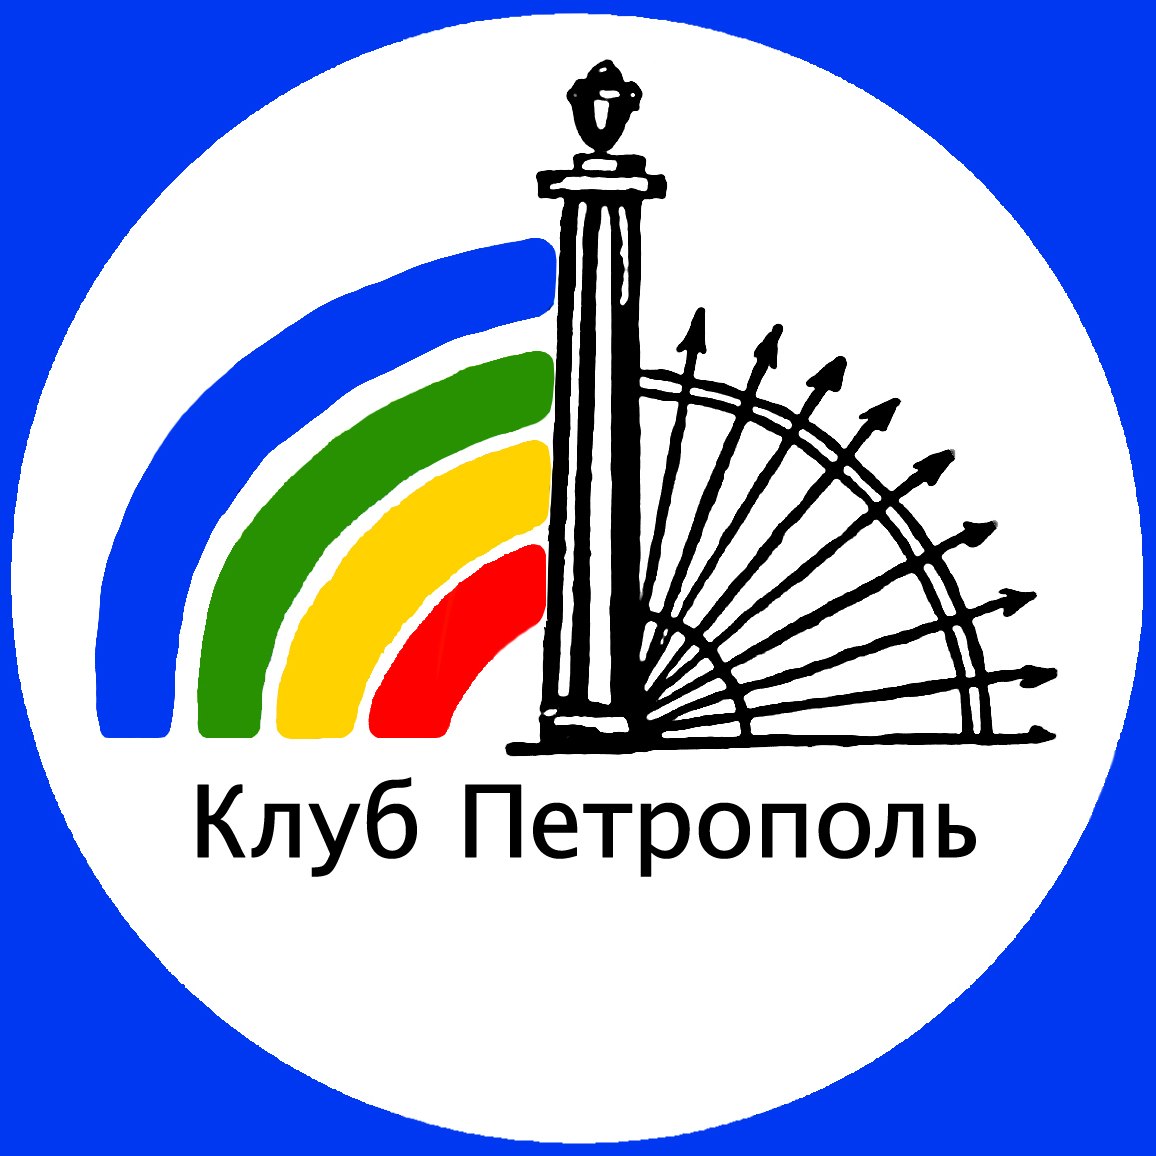 Петрополь